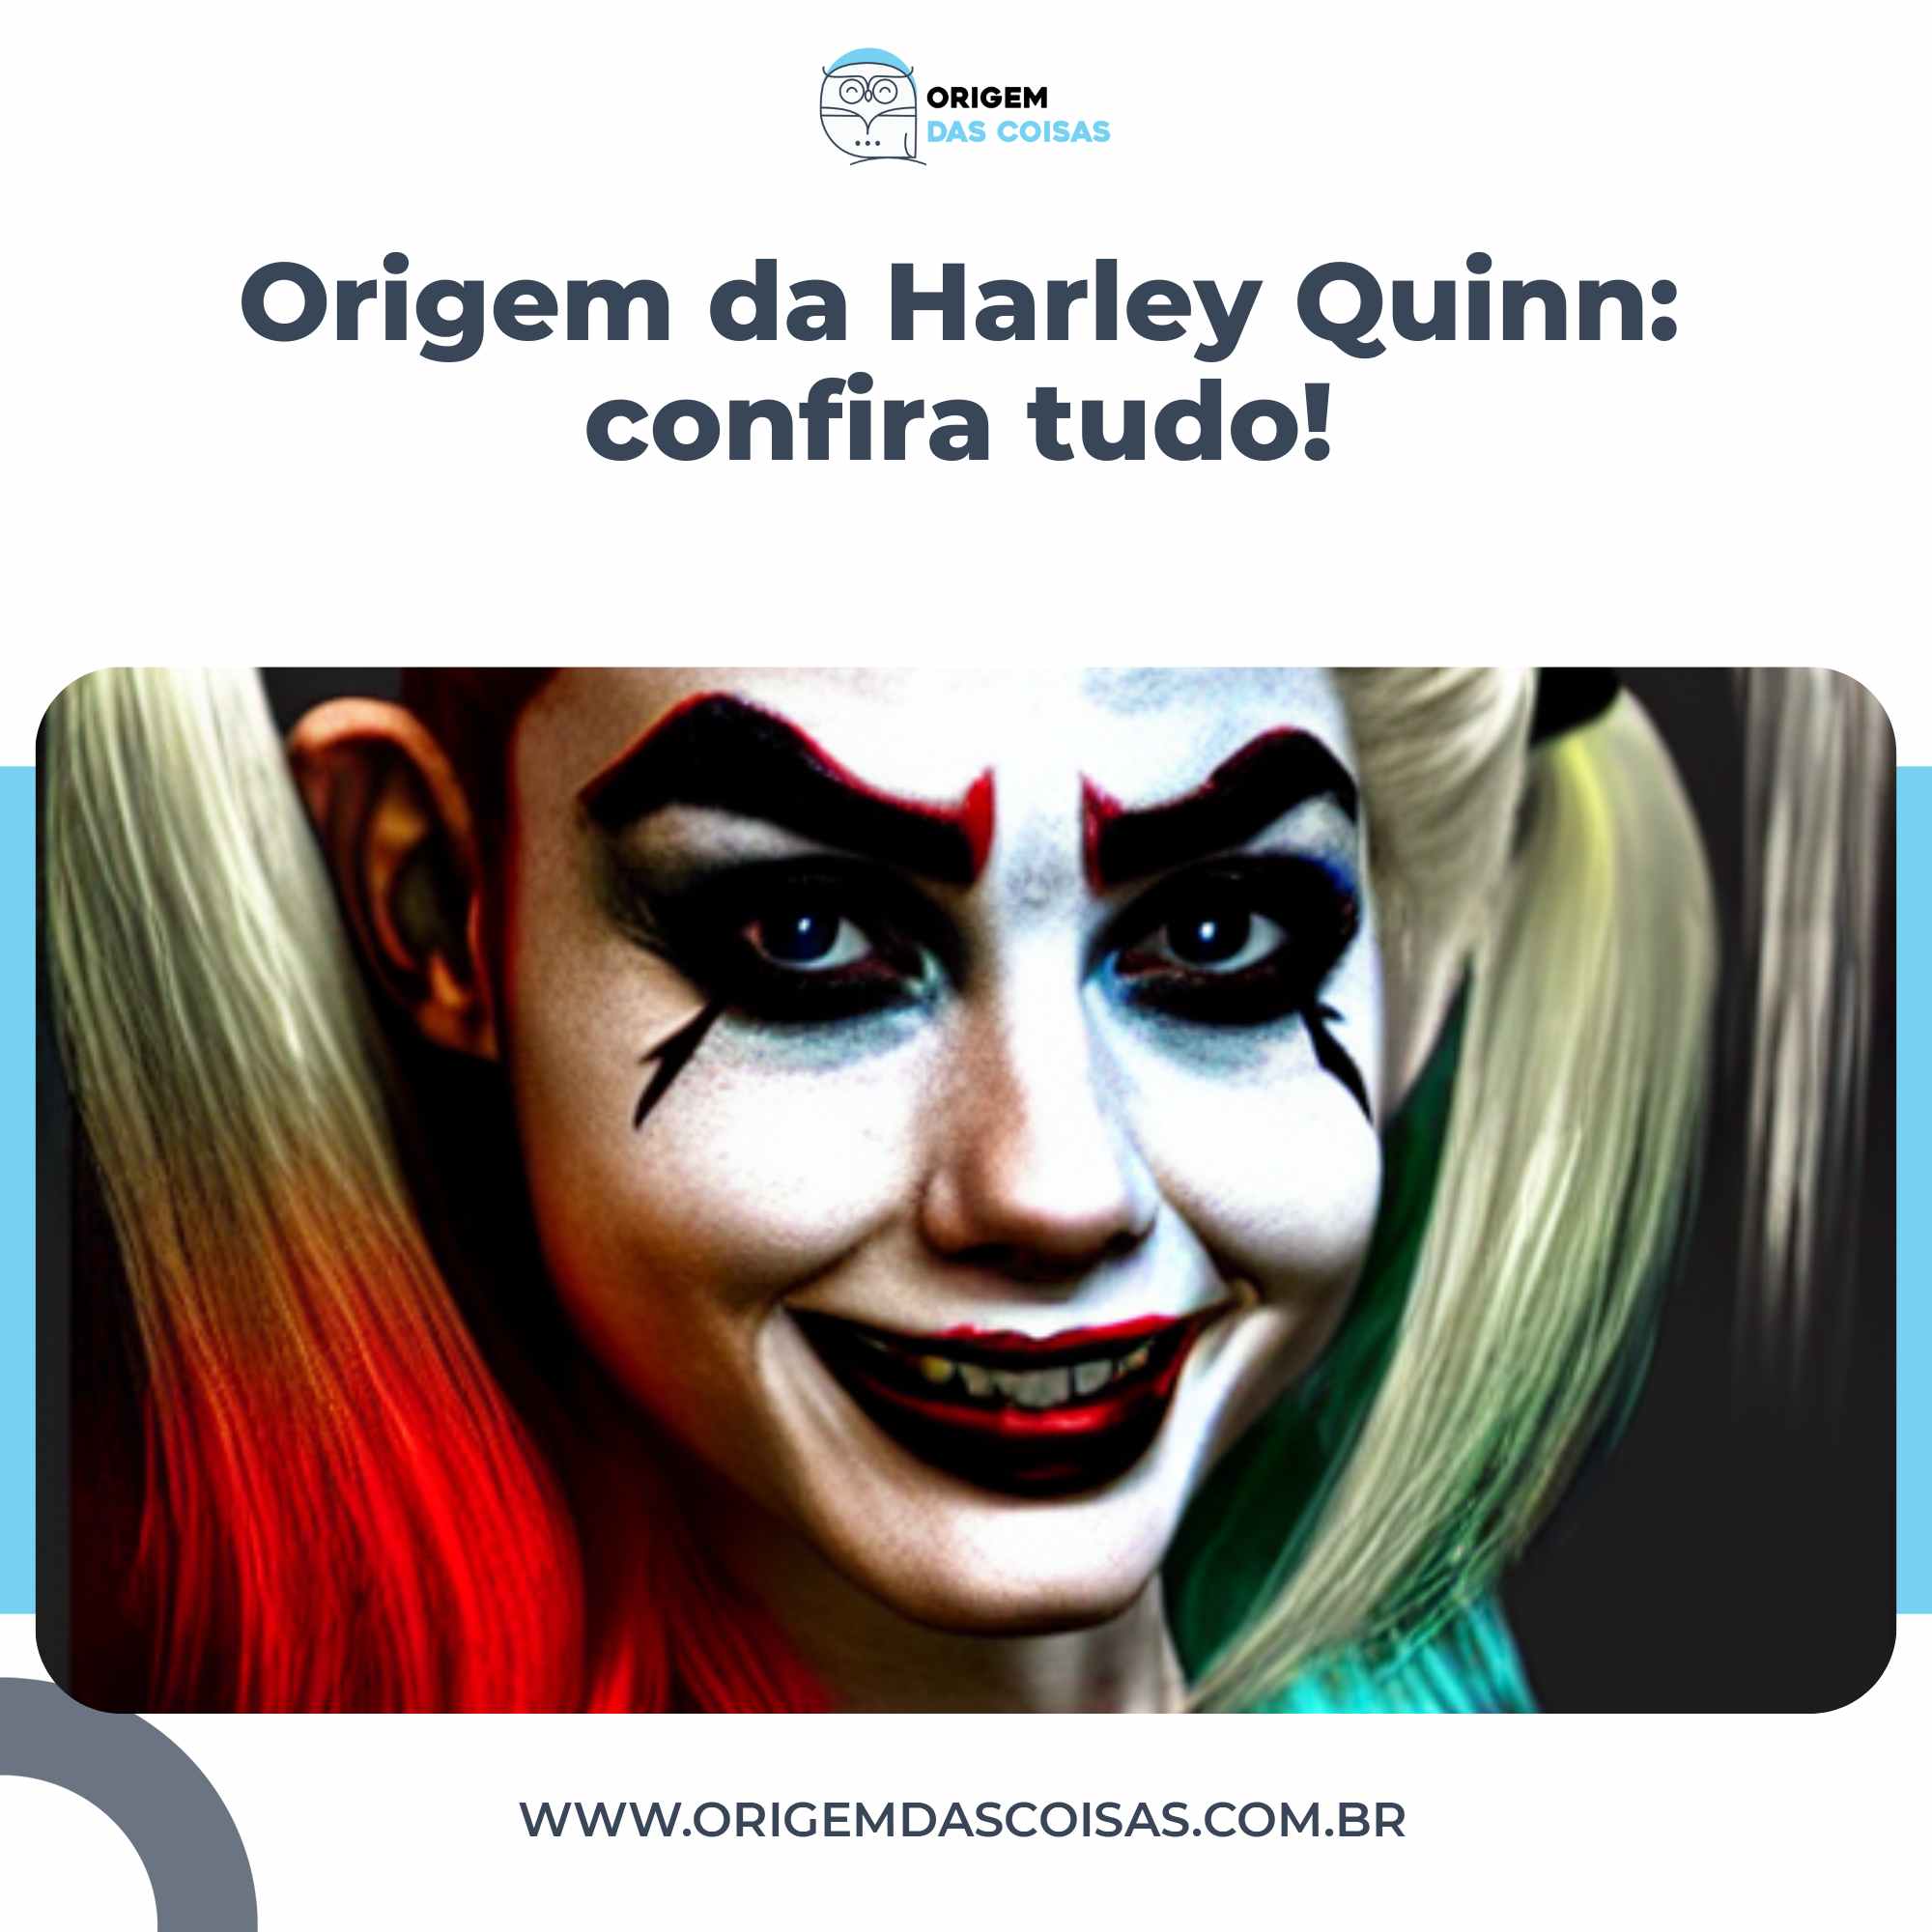 Origem da Harley Quinn confira tudo!